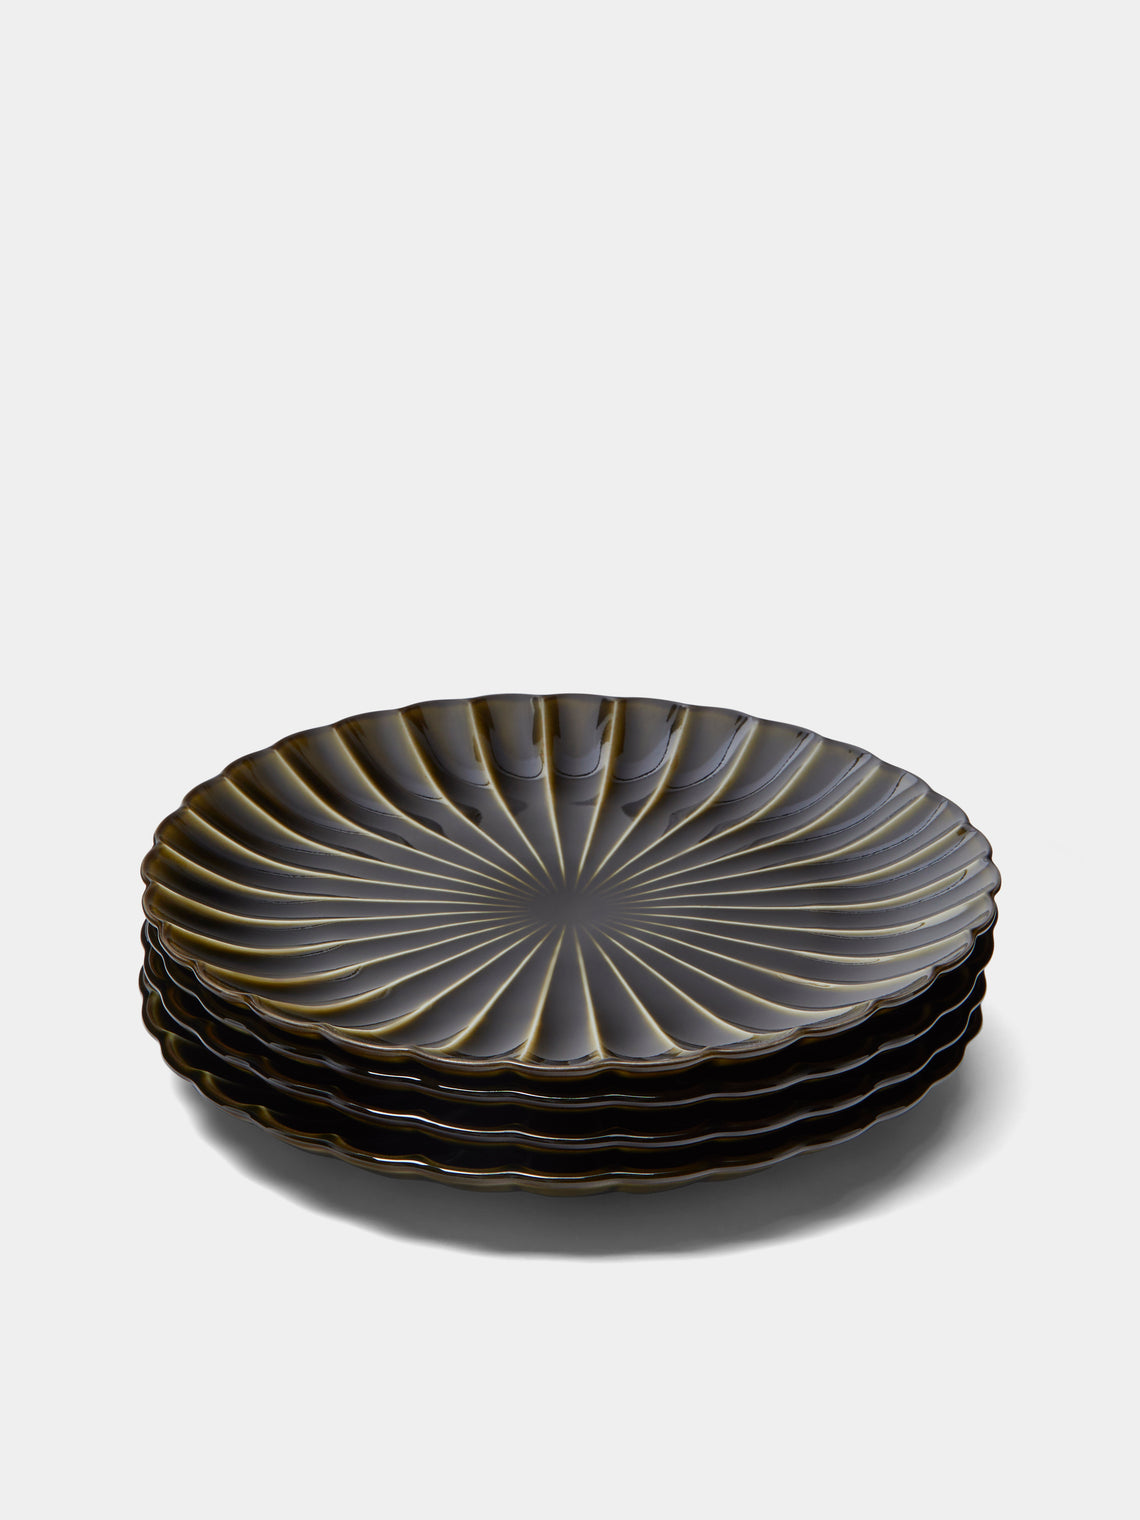 Kaneko Kohyo - Giyaman Urushi Ceramic Dinner Plates (Set of 4) -  - ABASK